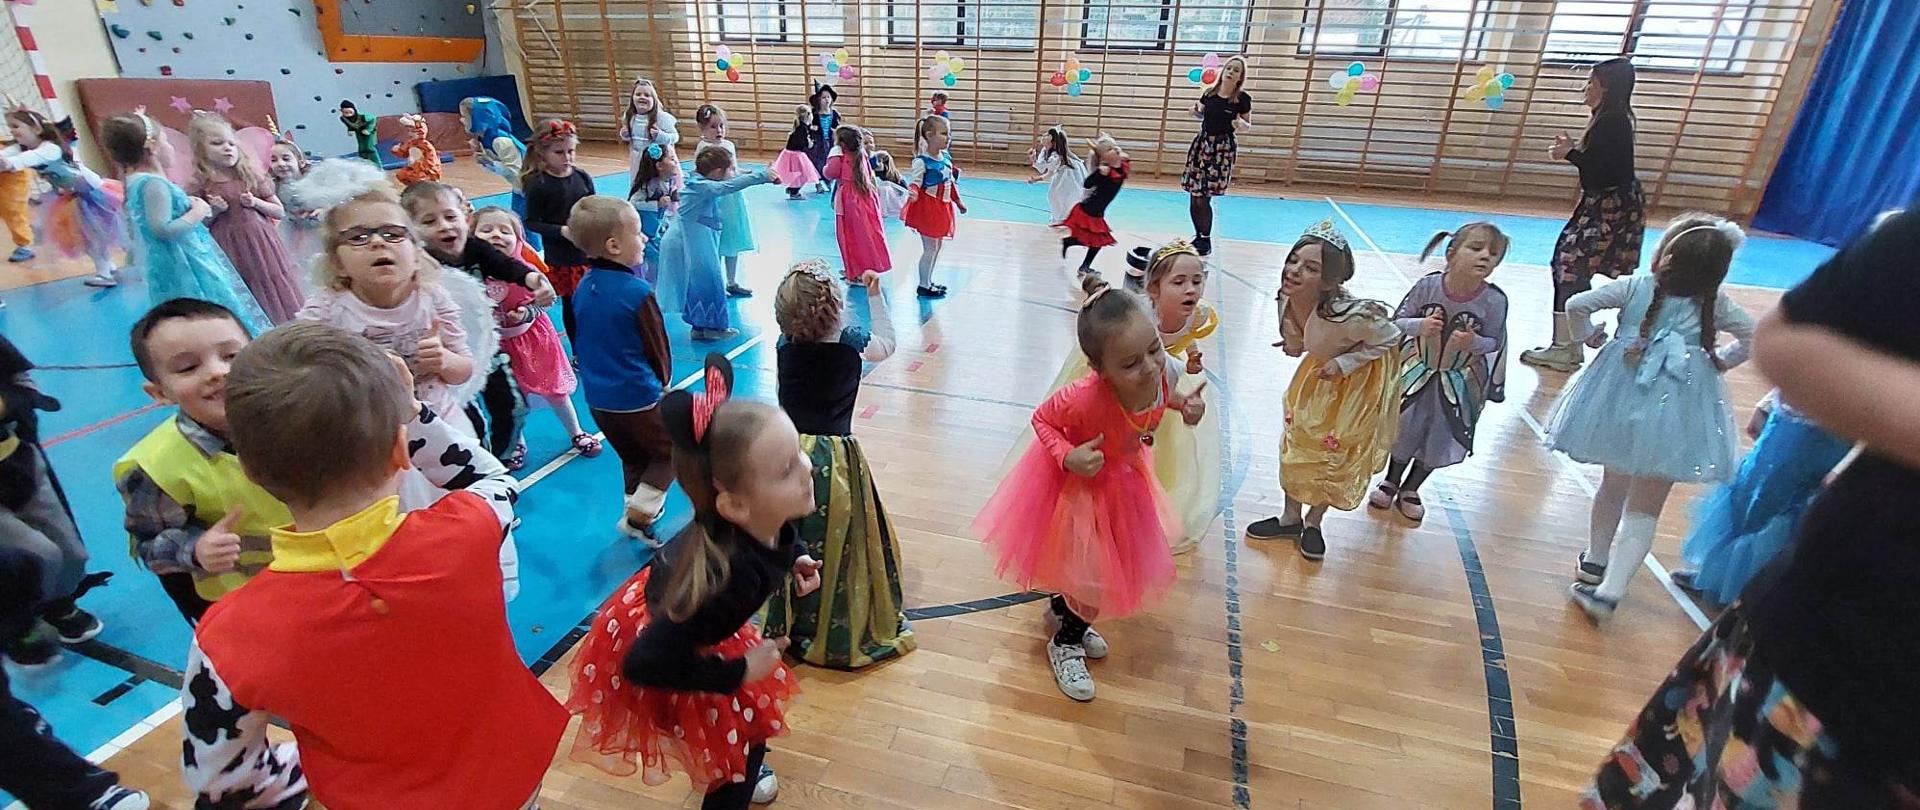 Radosne i uśmiechnięte dzieci w kolorowych, bajkowych kostiumach tańczą podczas balu karnawałowego na sali gimnastycznej. 